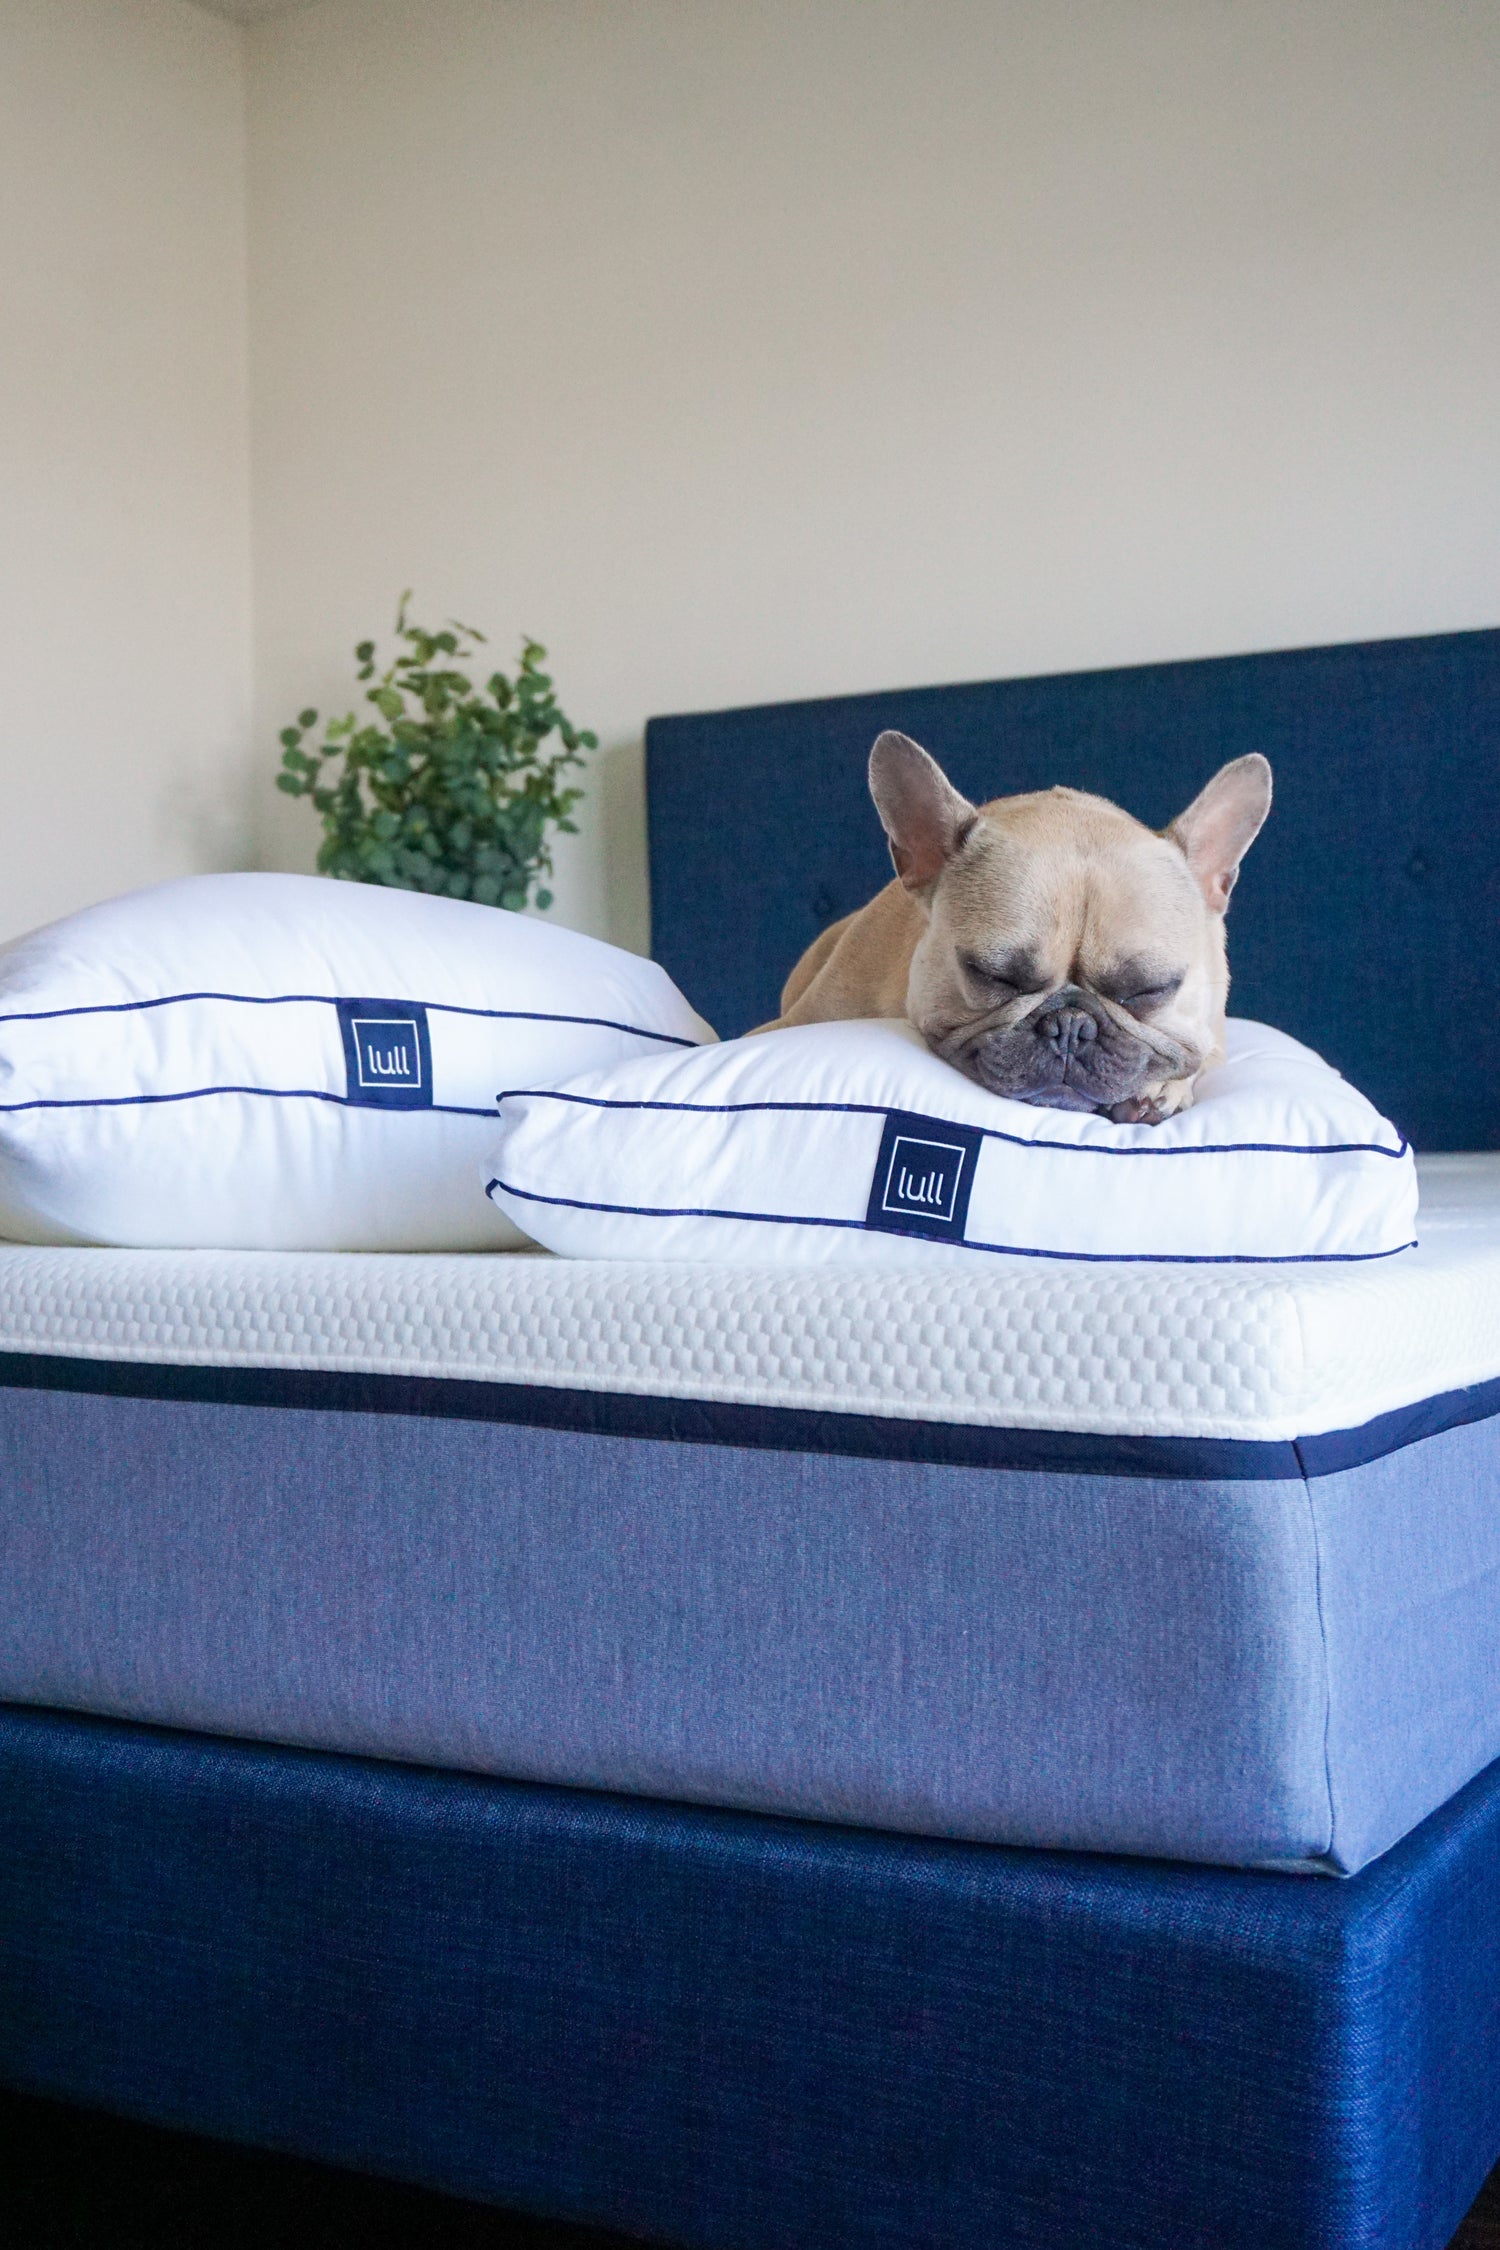 A dog sound asleep on a lull pillow and lull mattress.